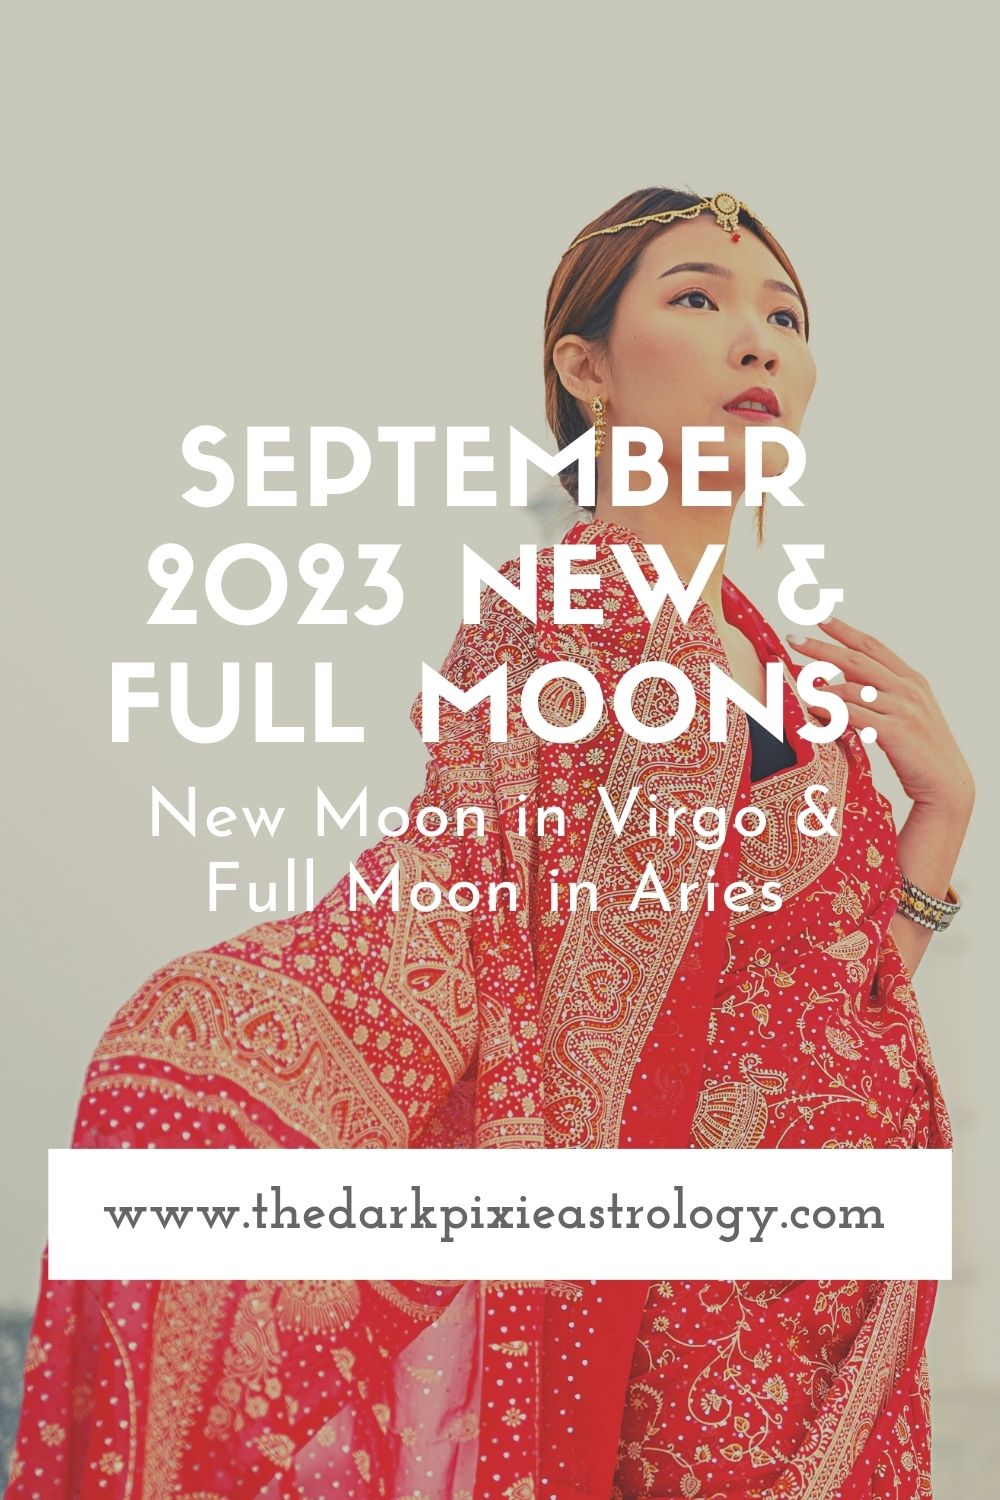 September 2023 New & Full Moons: New Moon in Virgo & Full Moon in Aries - The Dark Pixie Astrology